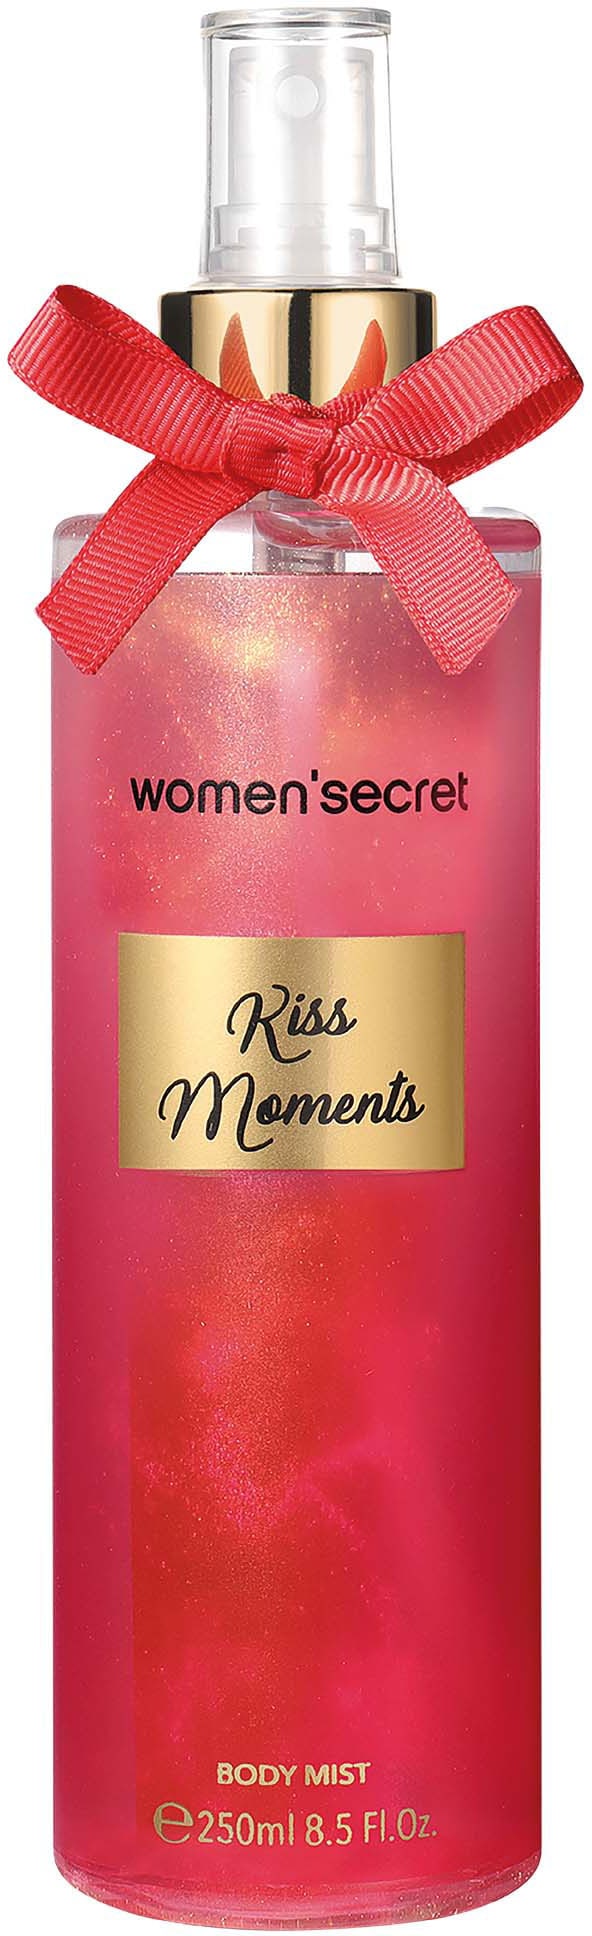 women\'secret Körperspray »Body Mist - BAUR Moments« Kiss bestellen 